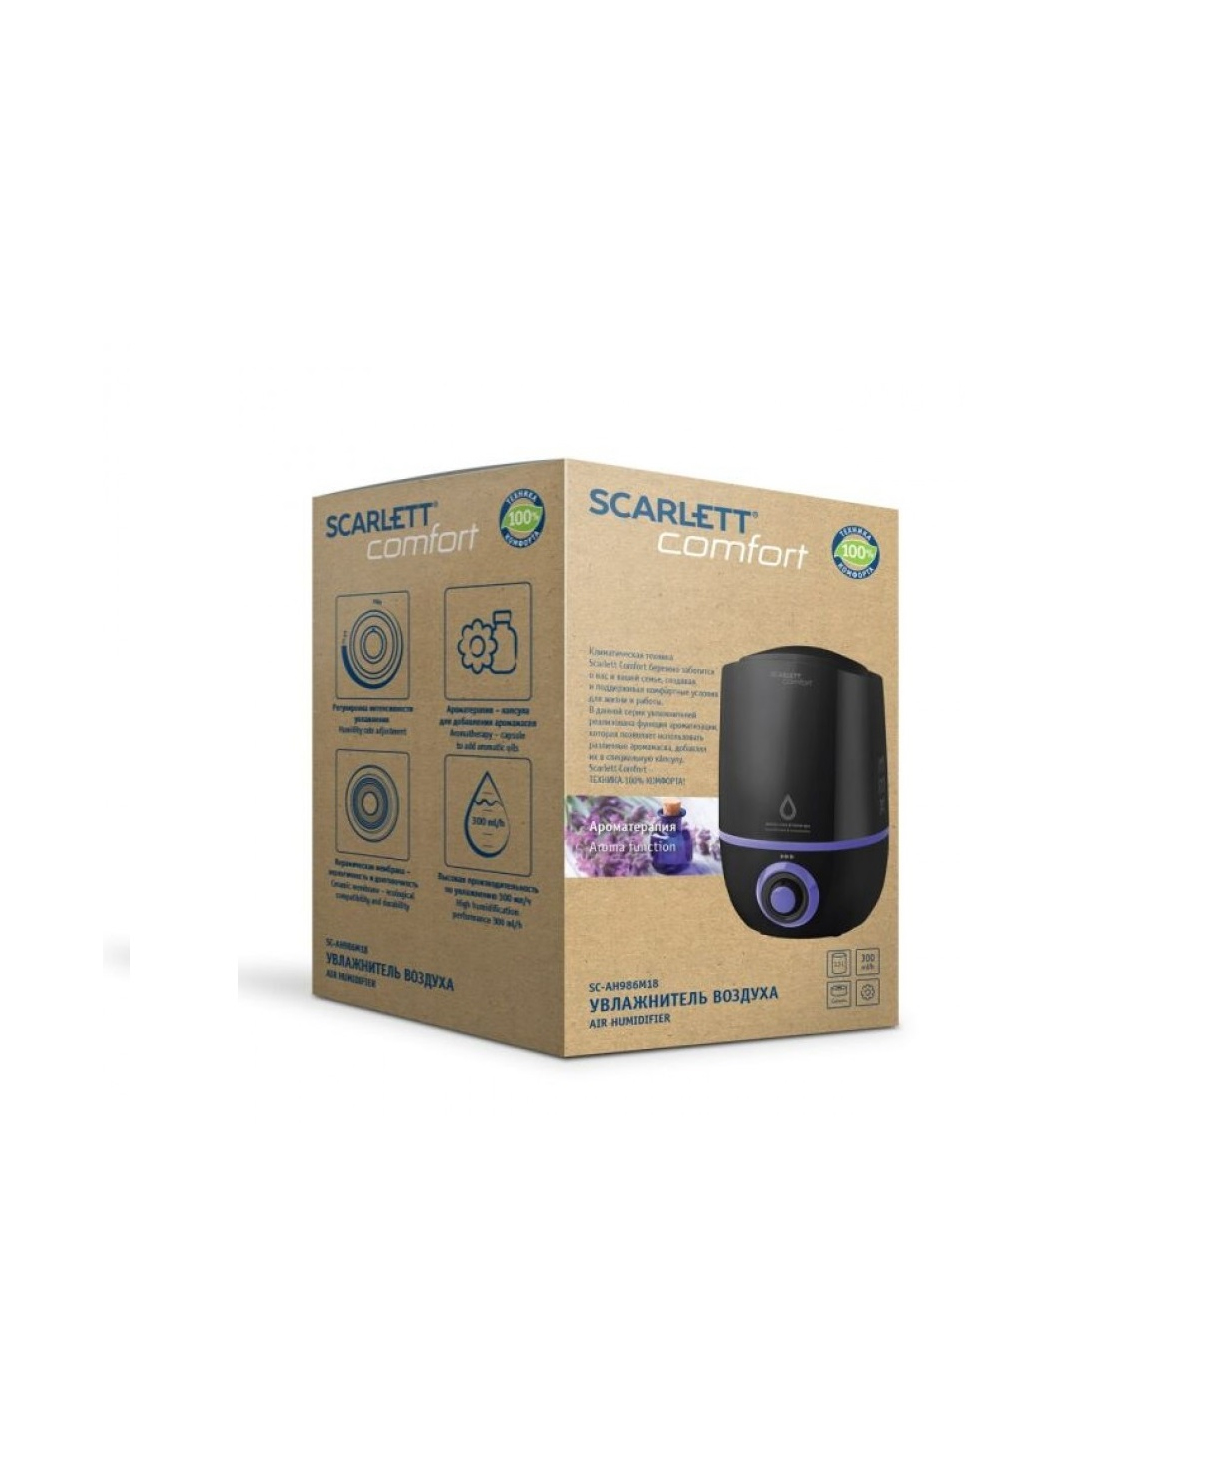 Air purifier and humidifier SCARLETT SC-AH986M18